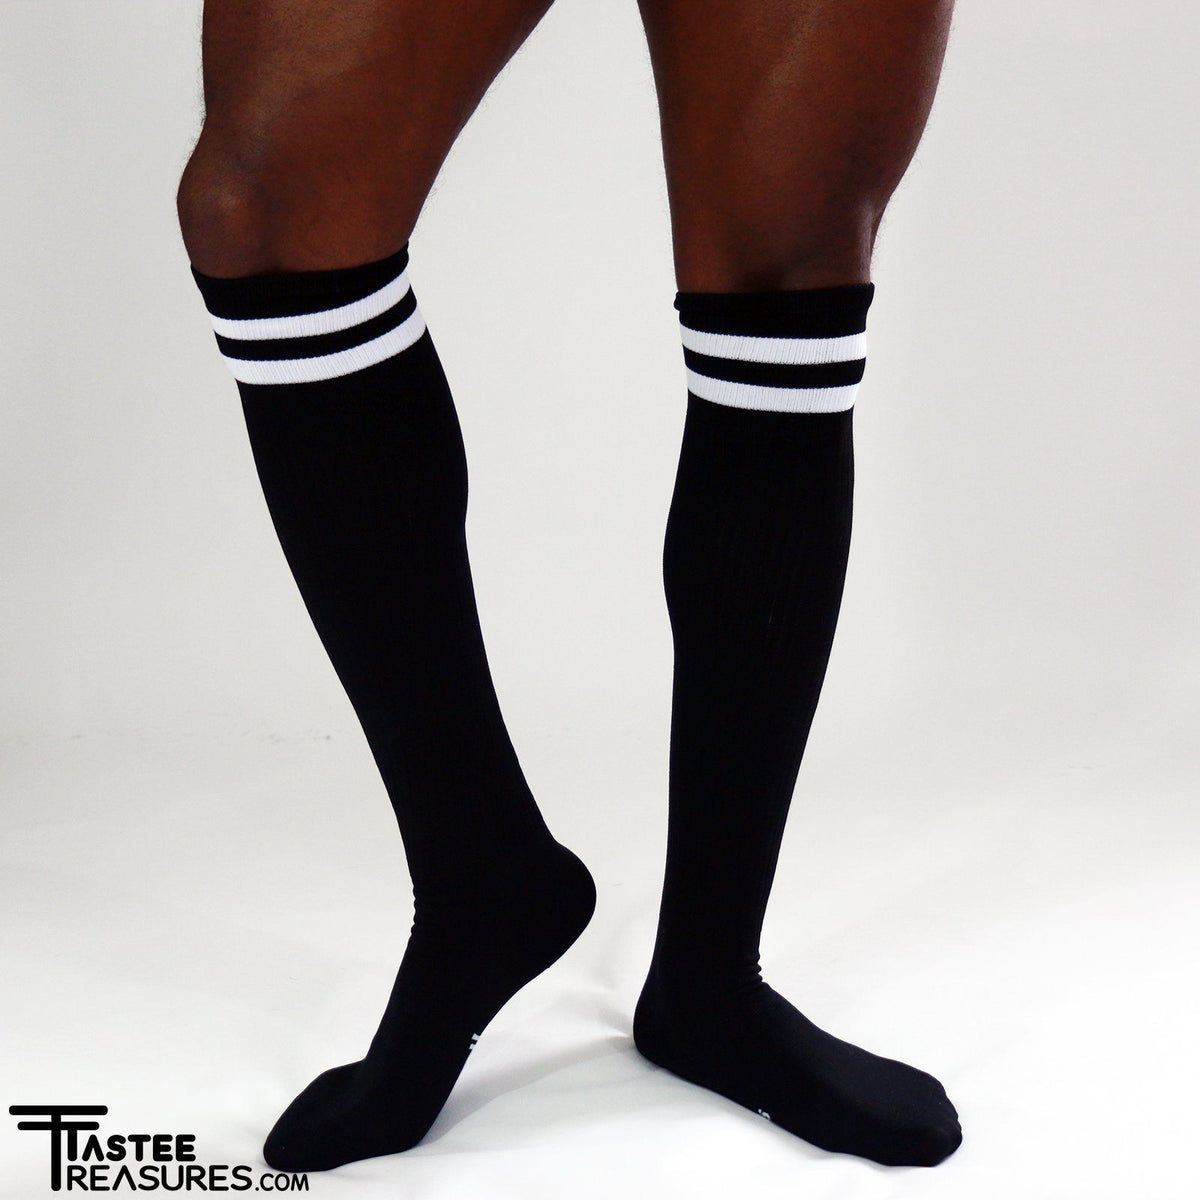 Midnight Mesh Knee High Socks Socks TasteeTreasures Black One Size Fits All 